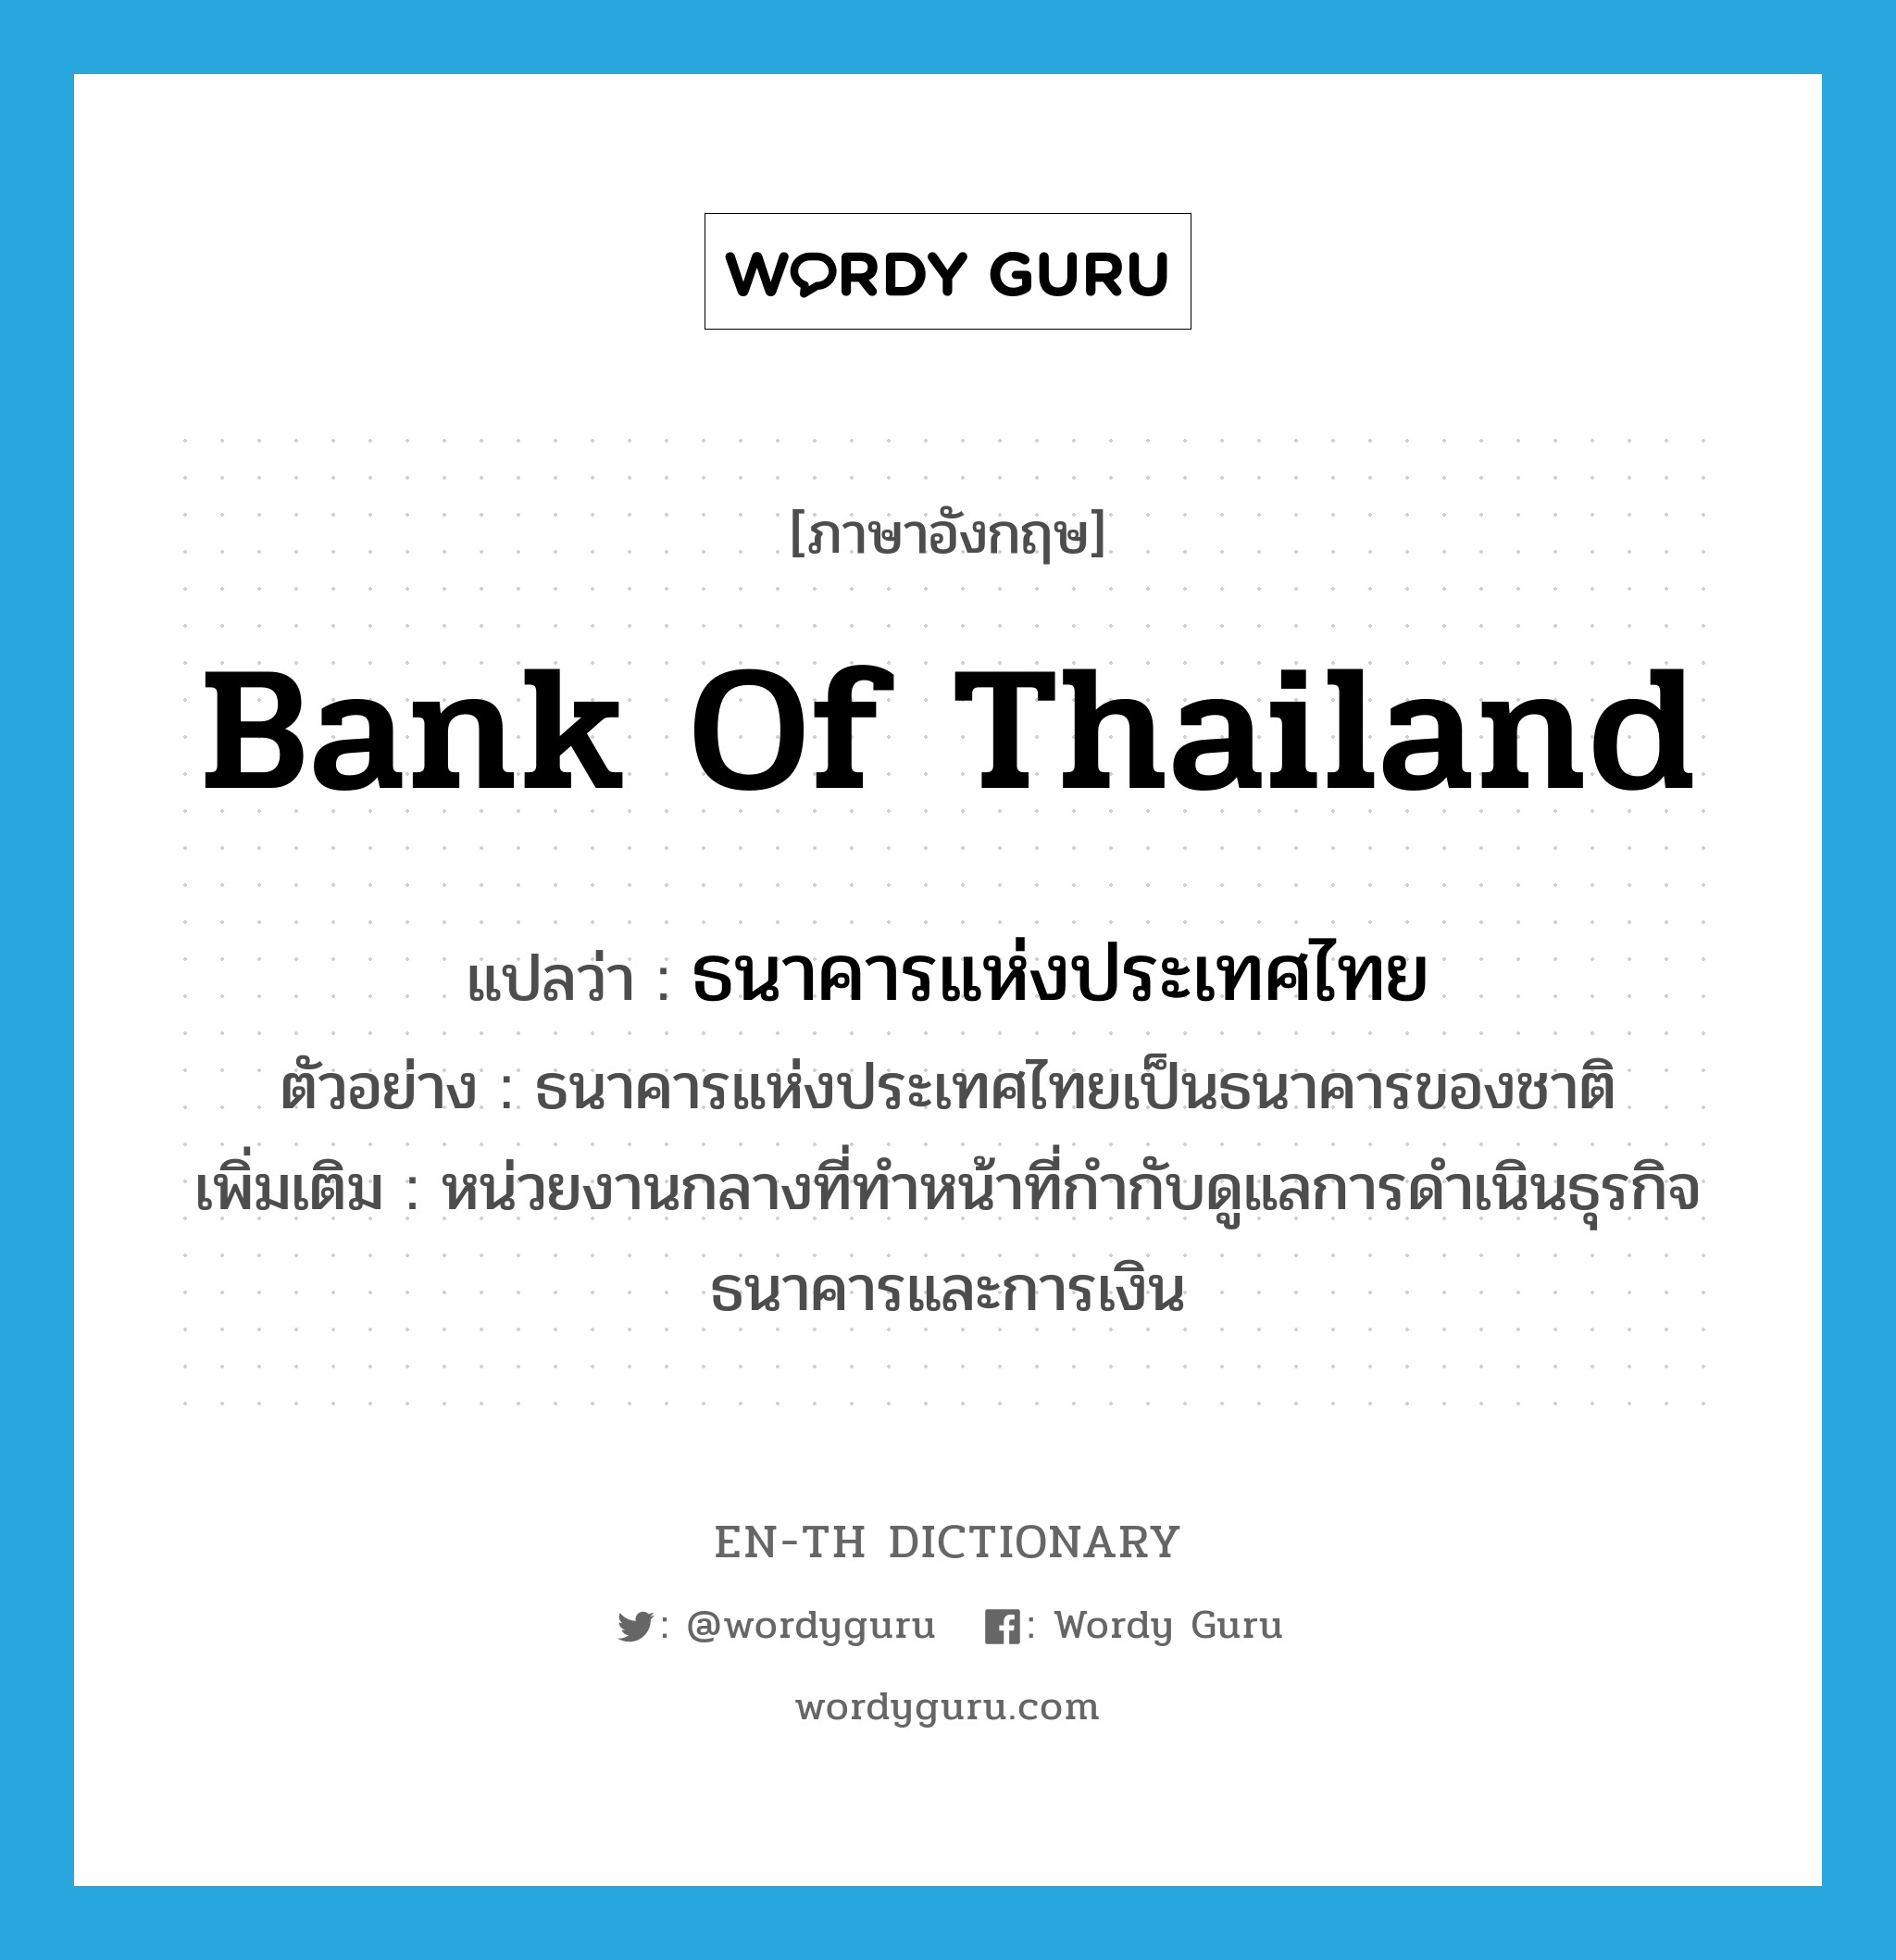 ธนาคารแห่งประเทศไทย ภาษาอังกฤษ?, คำศัพท์ภาษาอังกฤษ ธนาคารแห่งประเทศไทย แปลว่า Bank of Thailand ประเภท N ตัวอย่าง ธนาคารแห่งประเทศไทยเป็นธนาคารของชาติ เพิ่มเติม หน่วยงานกลางที่ทำหน้าที่กำกับดูแลการดำเนินธุรกิจธนาคารและการเงิน หมวด N